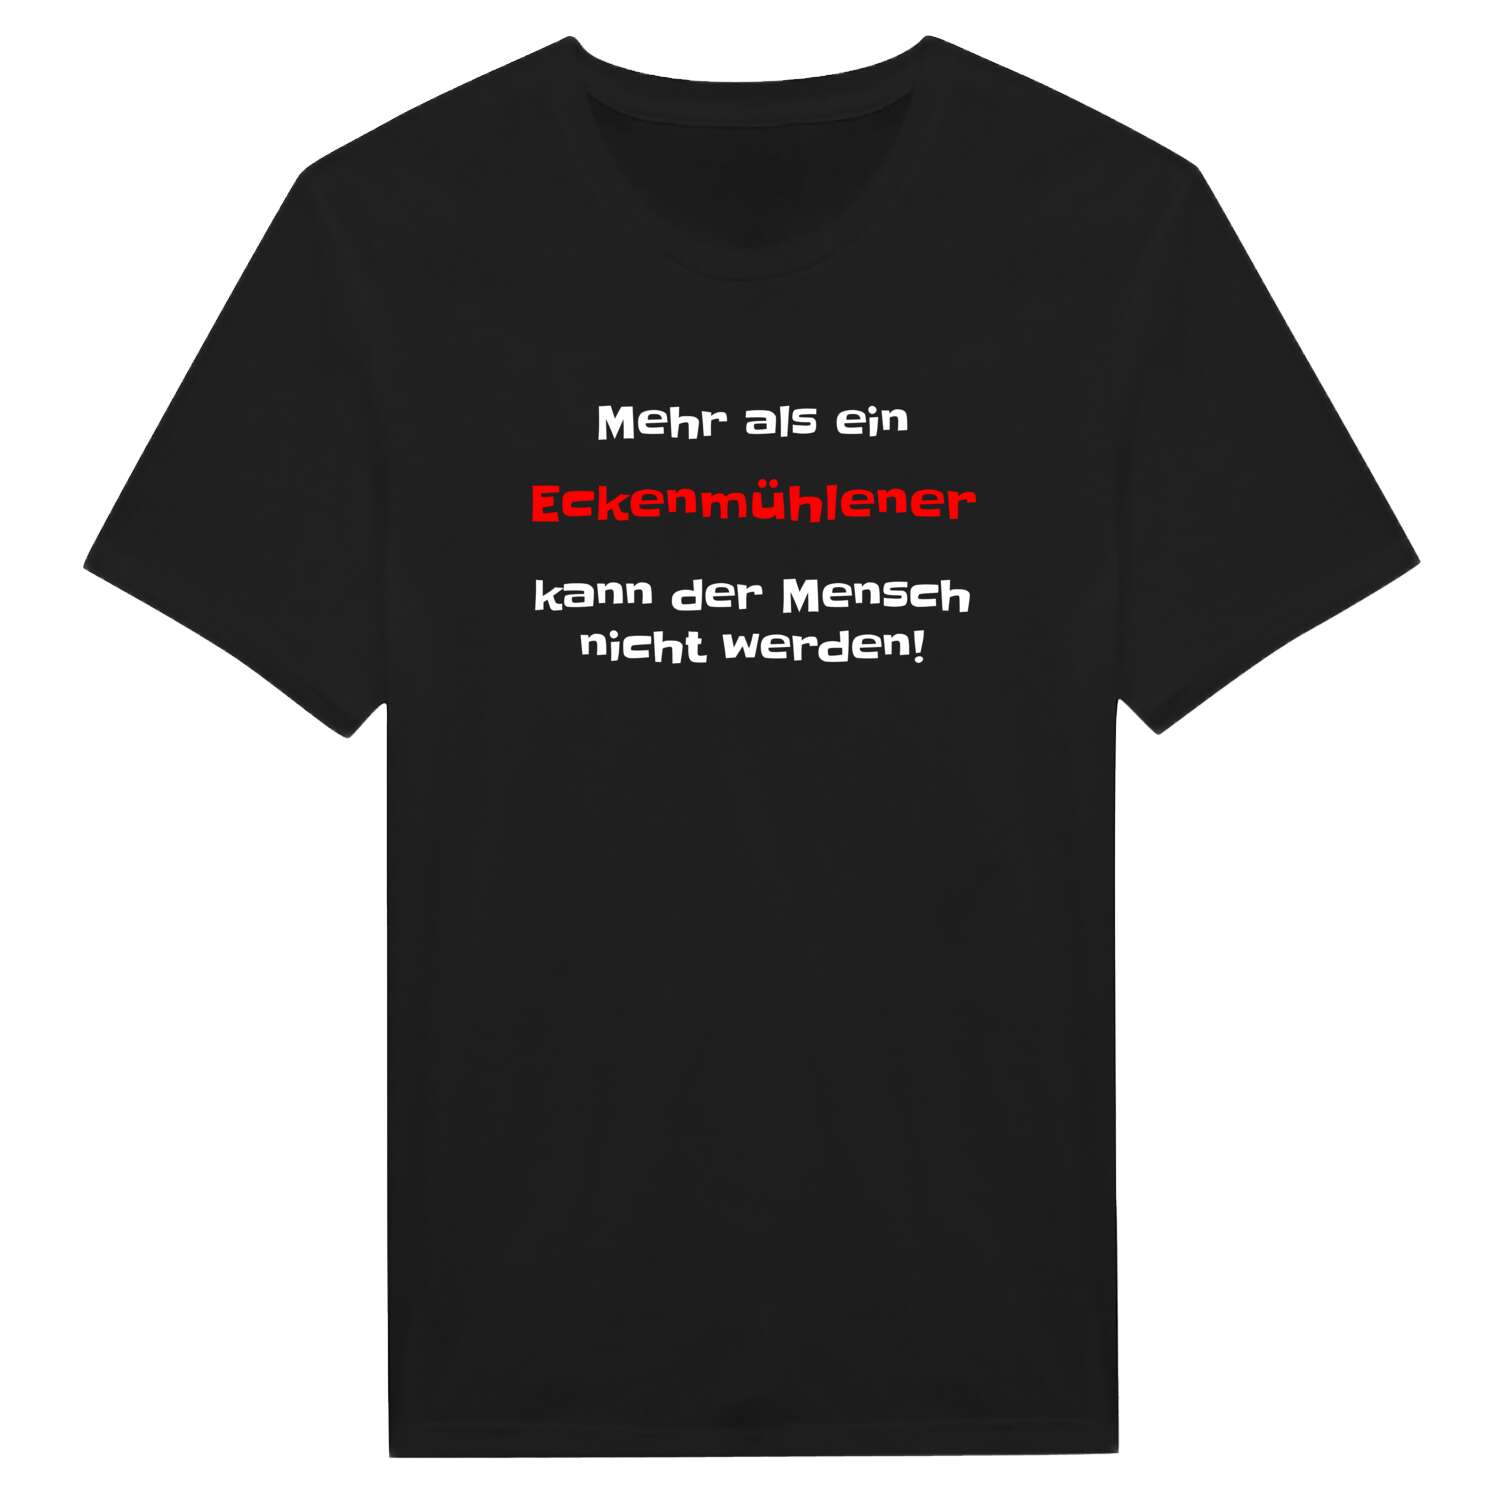 Eckenmühle T-Shirt »Mehr als ein«